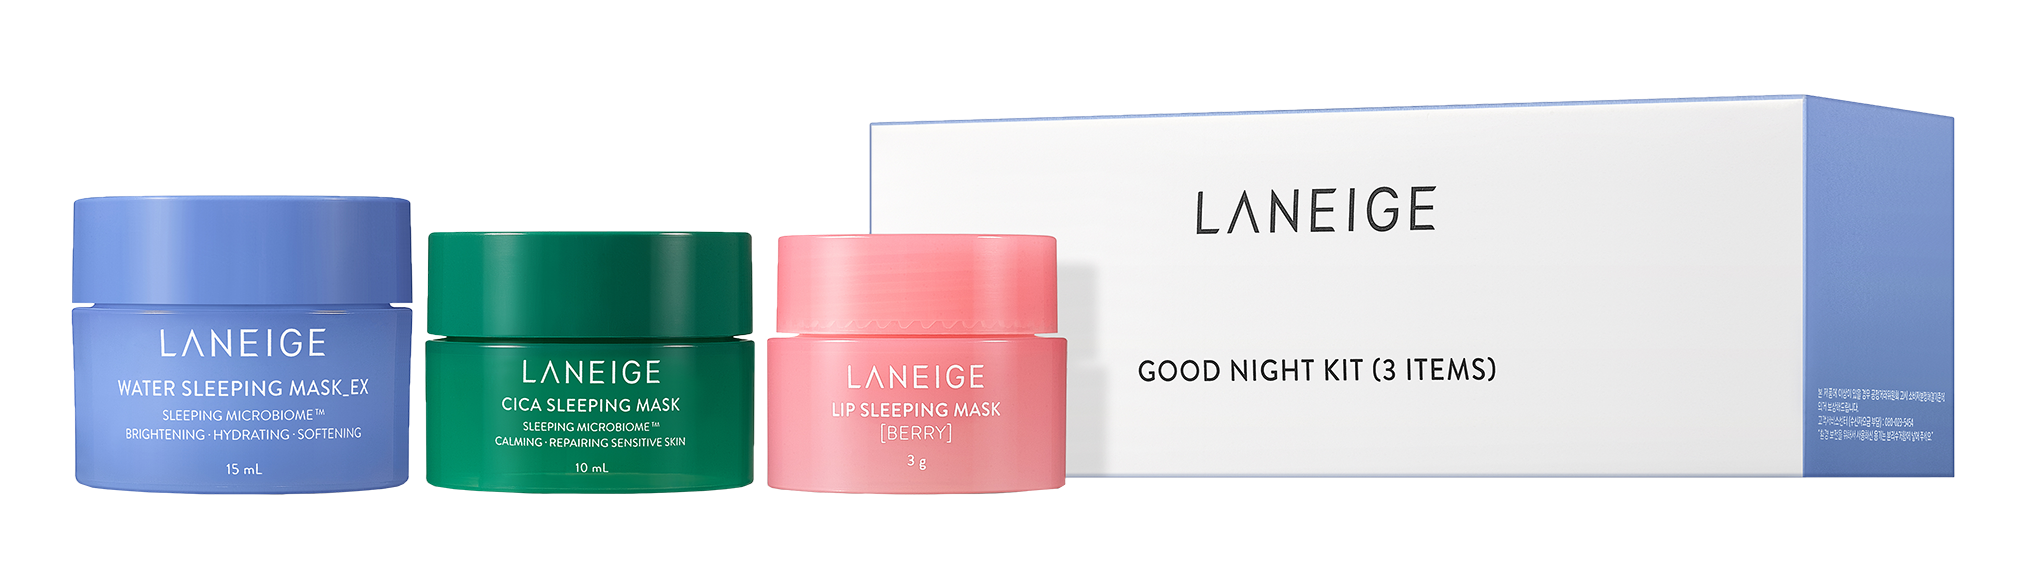 Laneige Goodnight Kit